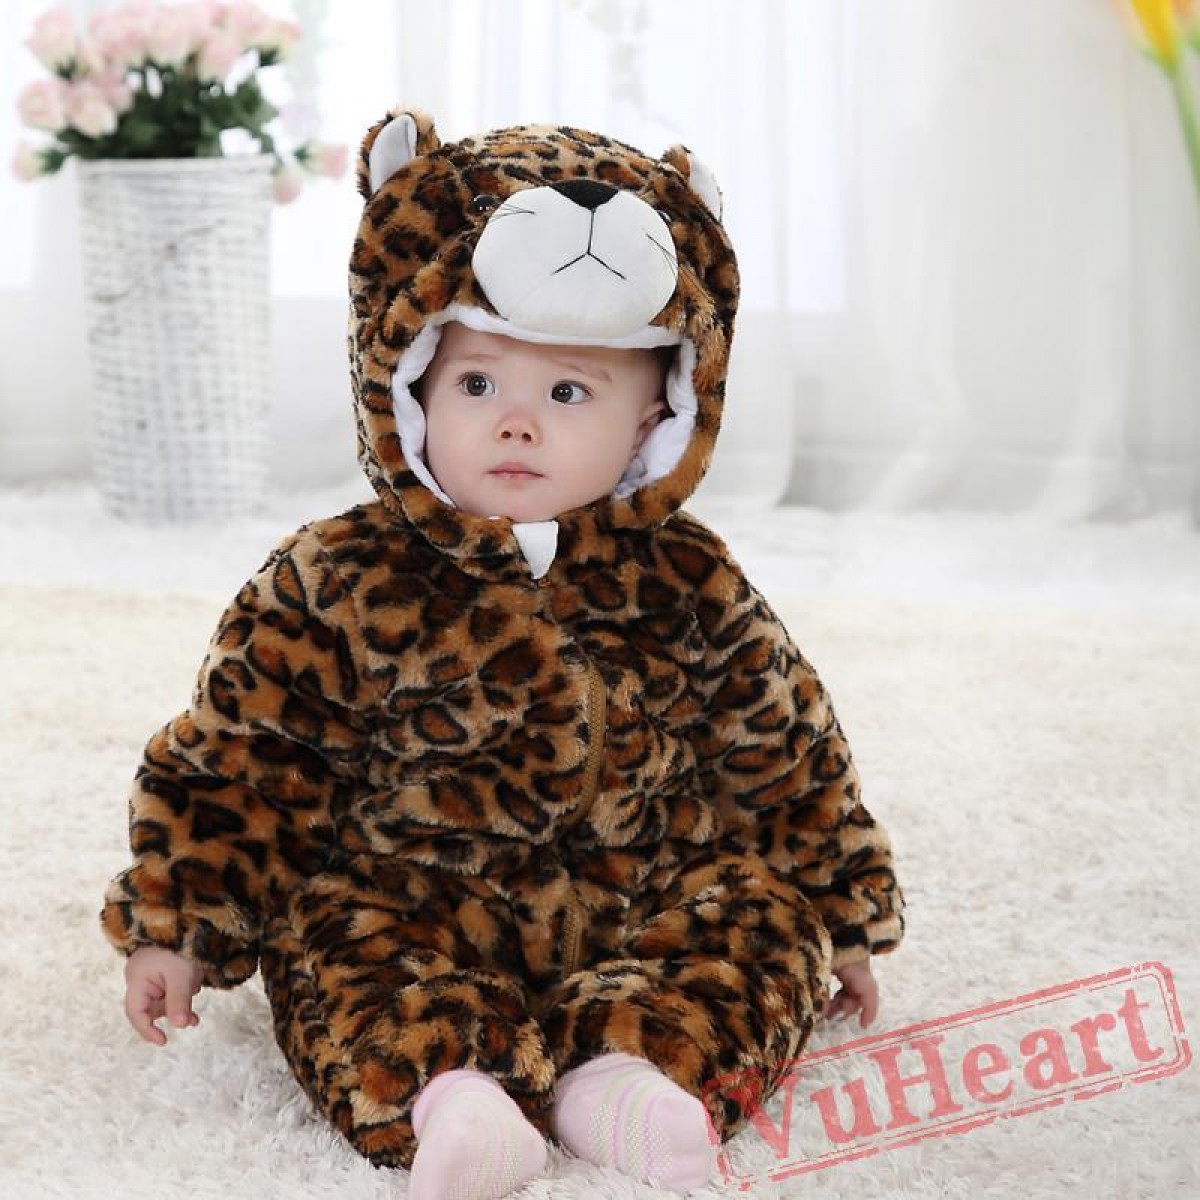 Winter Onesies - Baby Leopard Onesie Costume - Kigurumi Onesies